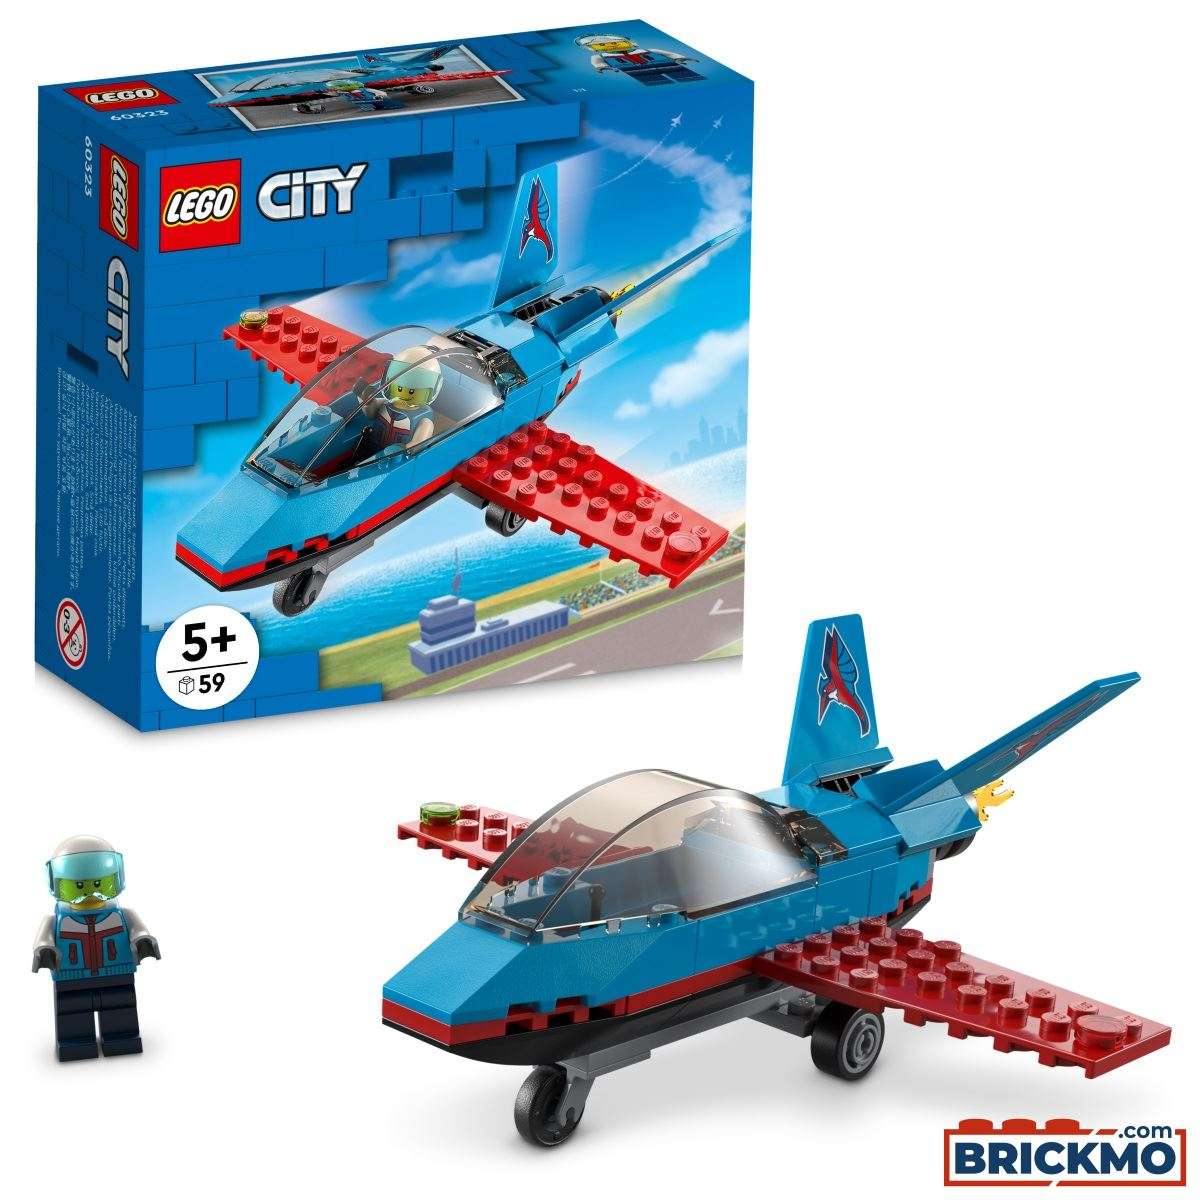 LEGO City 60323 Stuntflugzeug 60323